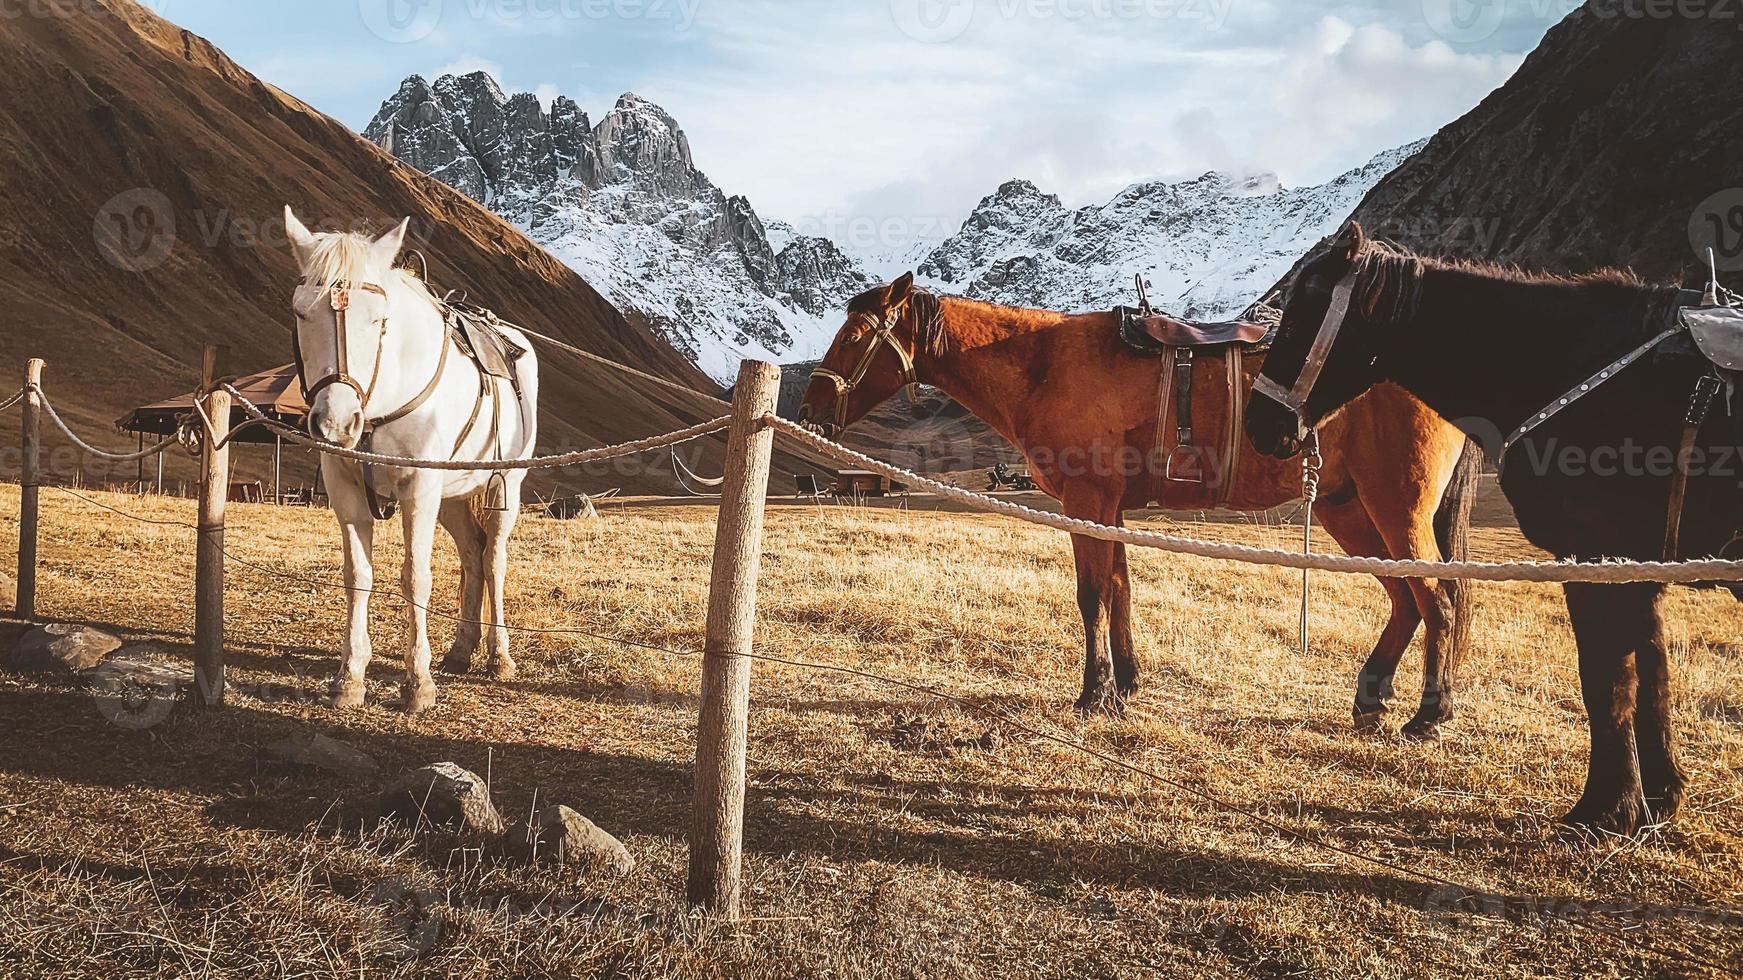 mooi drie paarden wit bruin zwart staan in weide veld- in juta vallei in Kazbegi nationaal park met dramatisch berg pieken achtergrond. wandeltocht juta vallei panorama foto